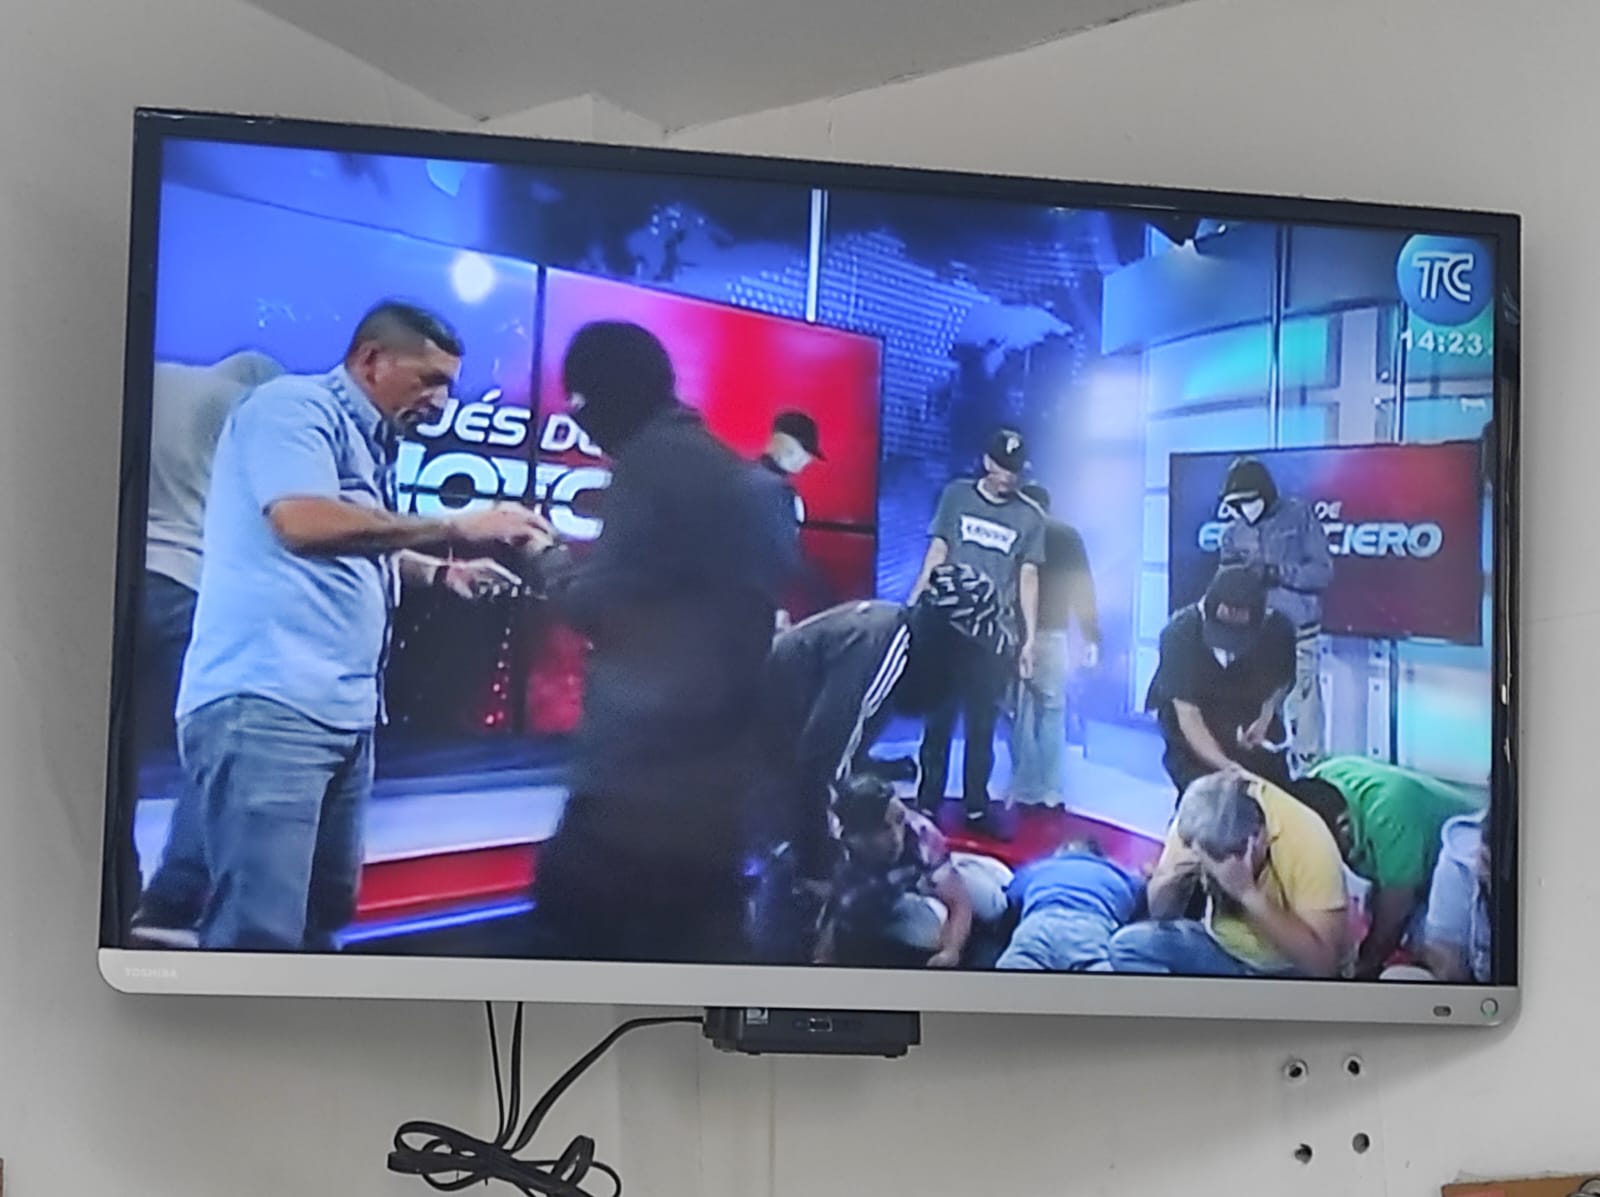 Hombres armados con pistolas, carabinas y hasta machetes ingresaron a las instalaciones de TC Televisión en Guayaquil y amedrentaron a periodistas, trabajadores y demás.